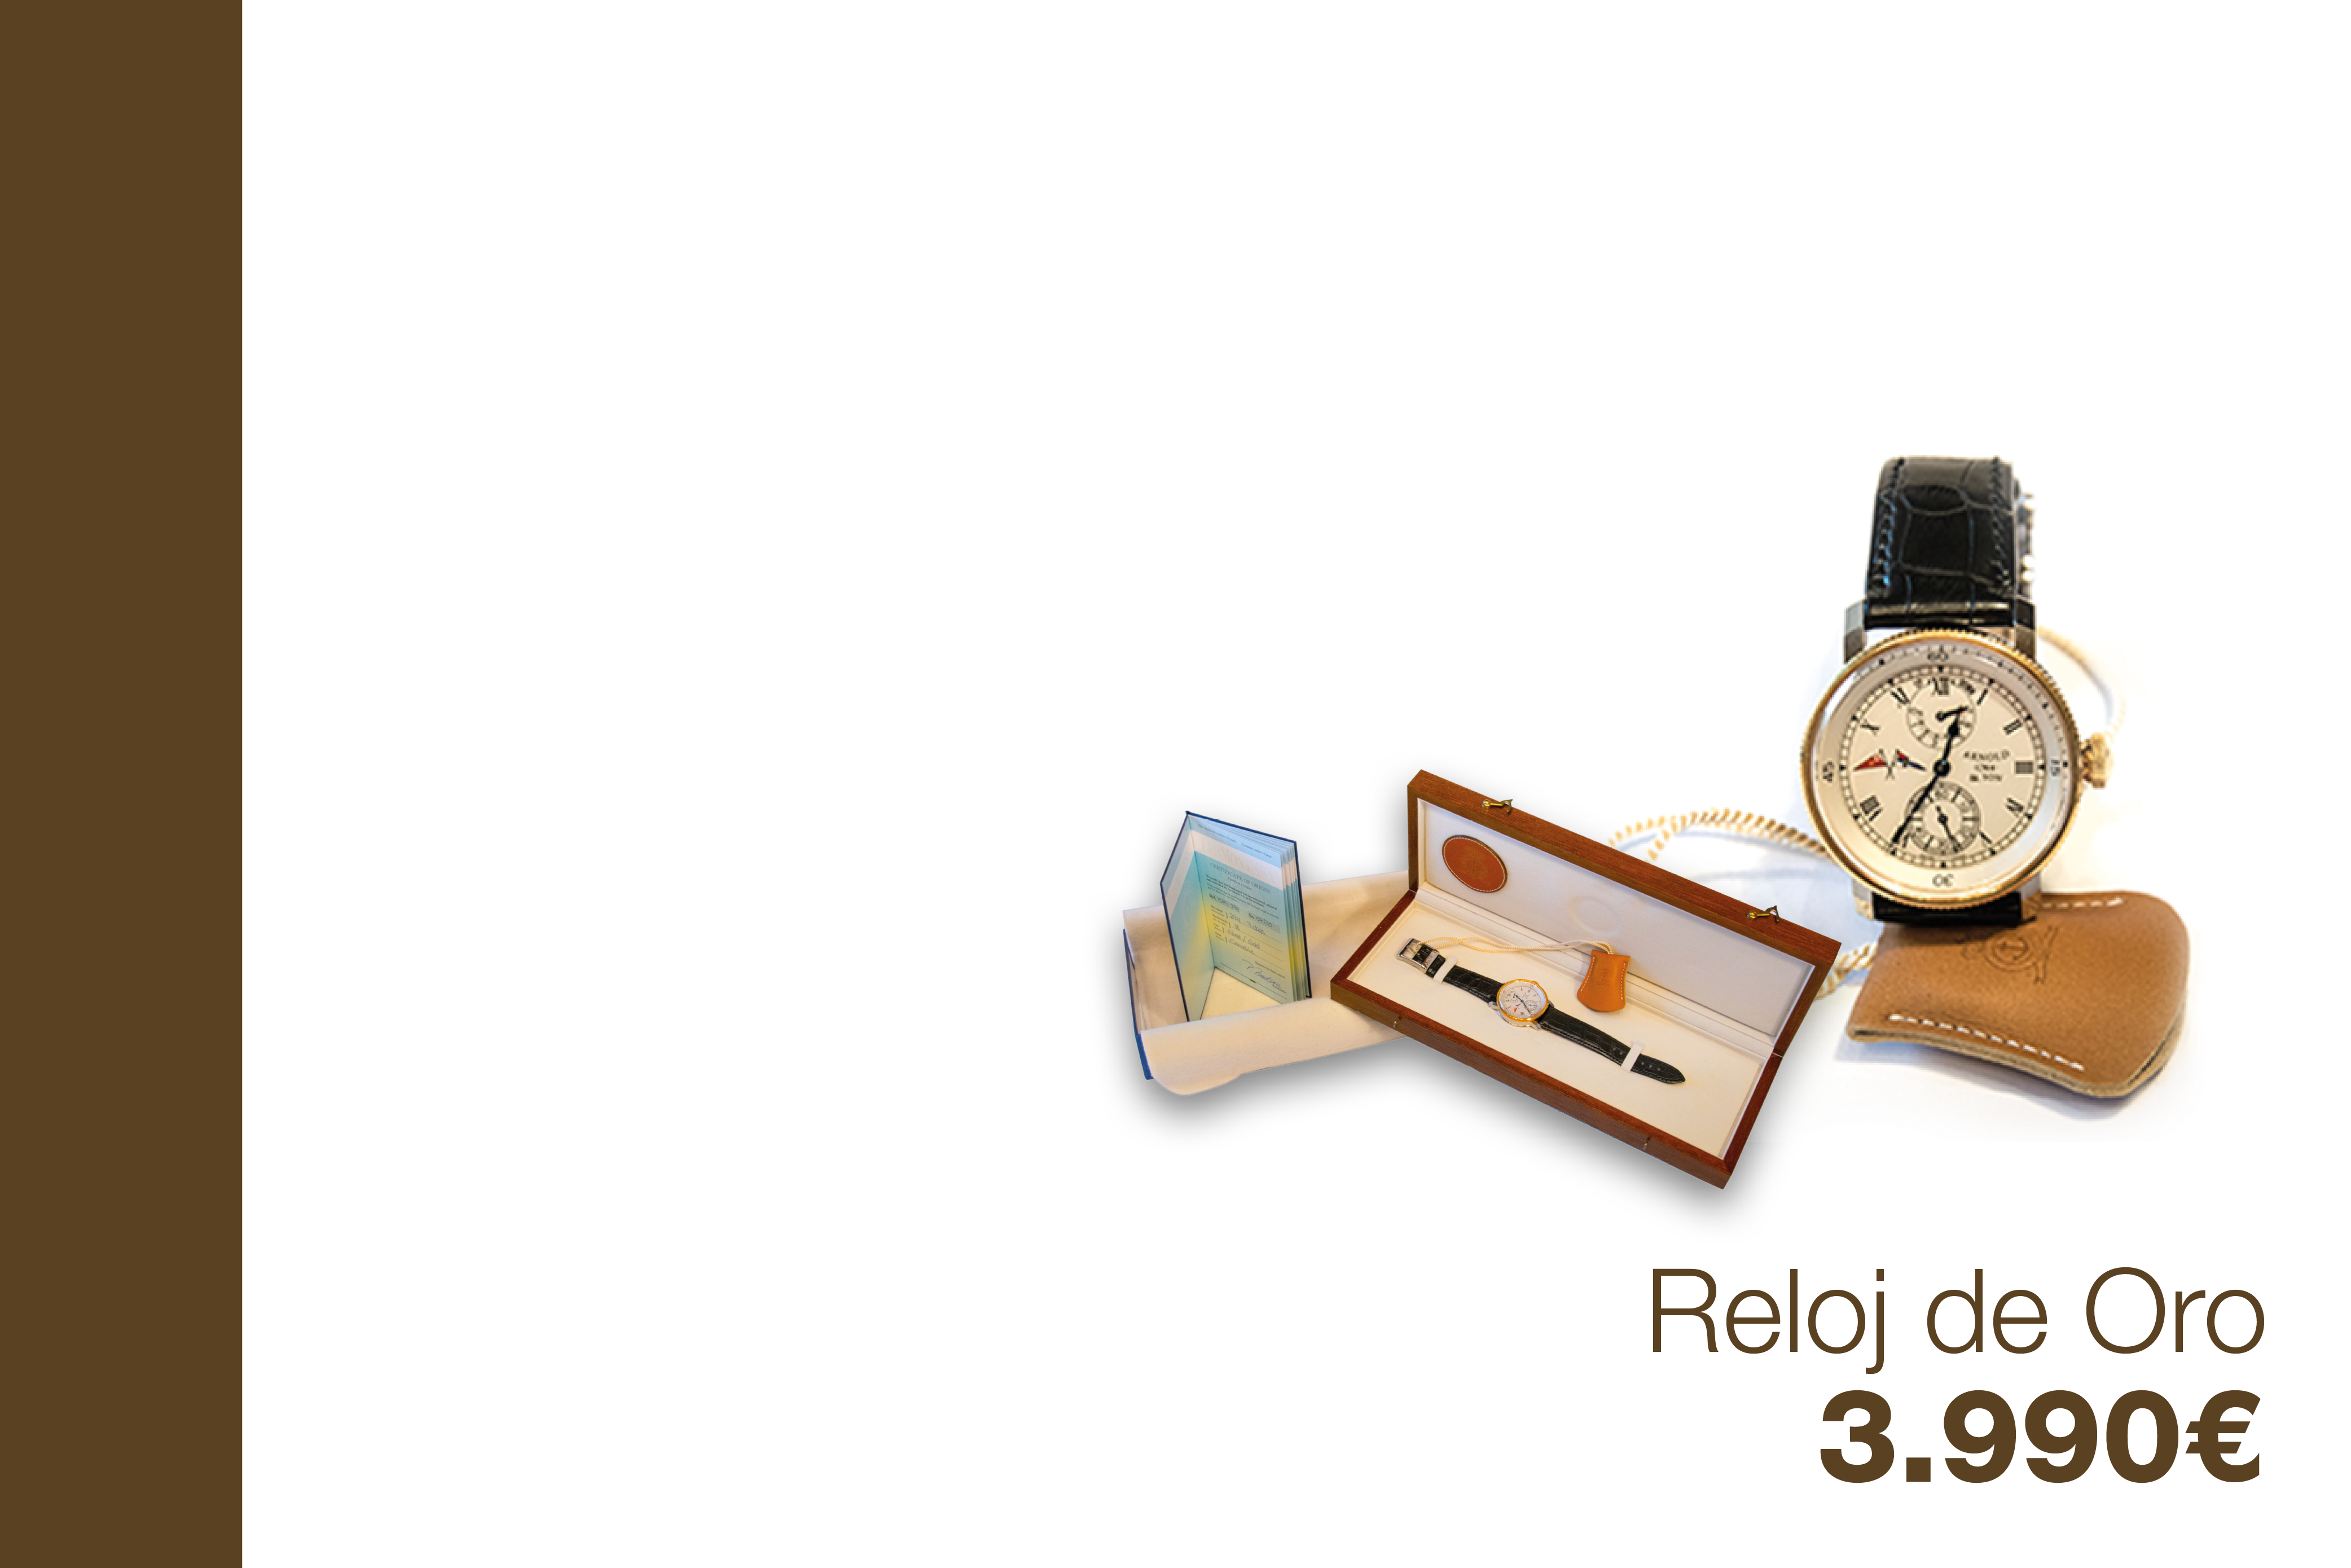 Reloj de Oro - 3990